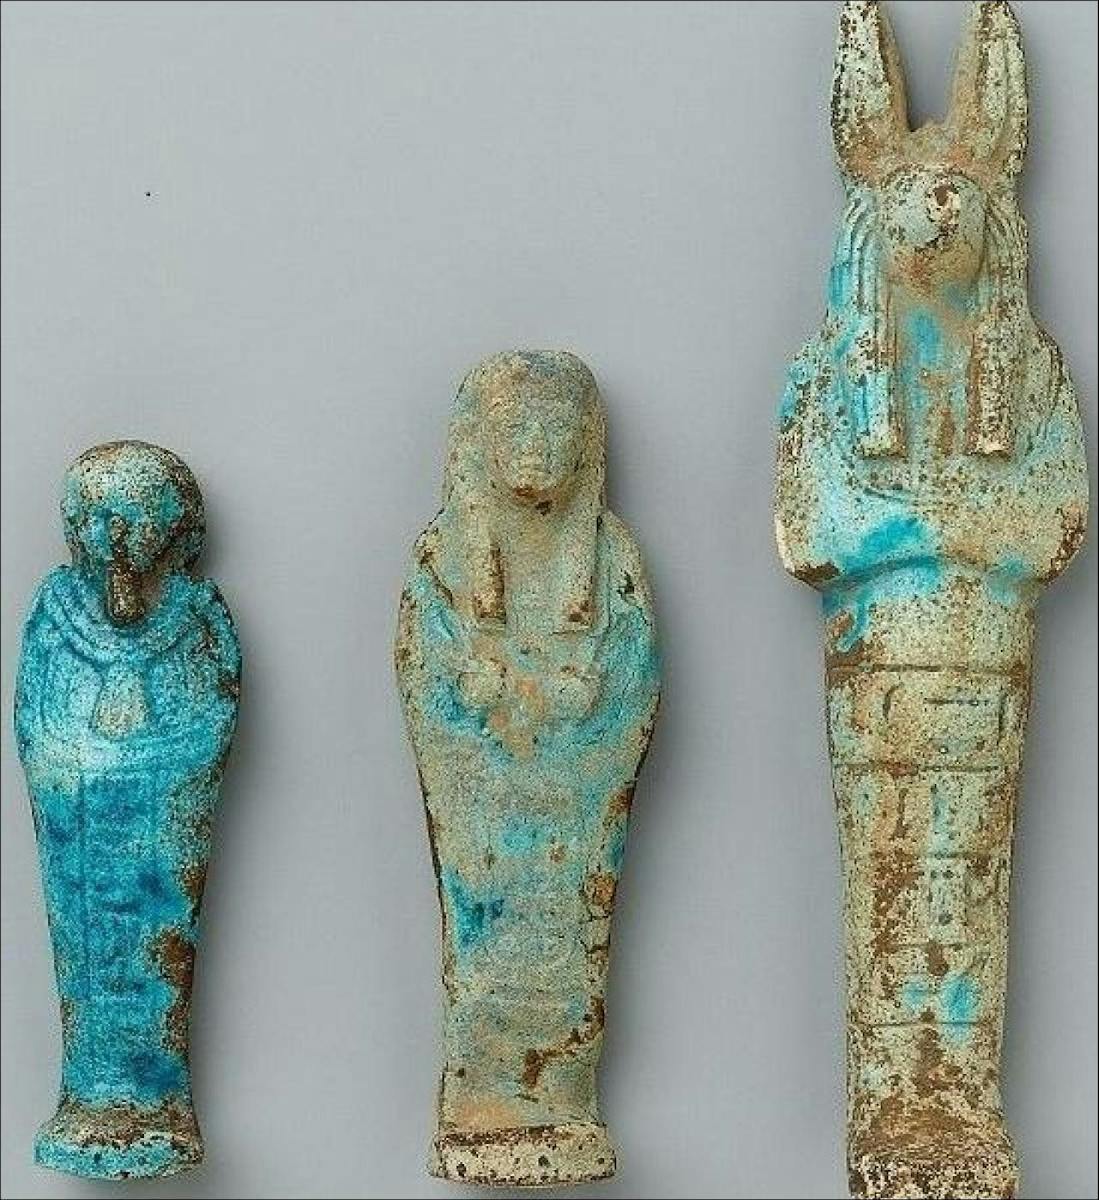 Les objets restitués étaient des figurines d'Anubis, des statuettes funéraires et diverses autres amulettes datant du 3e ou 4e millénaire avant notre ère.